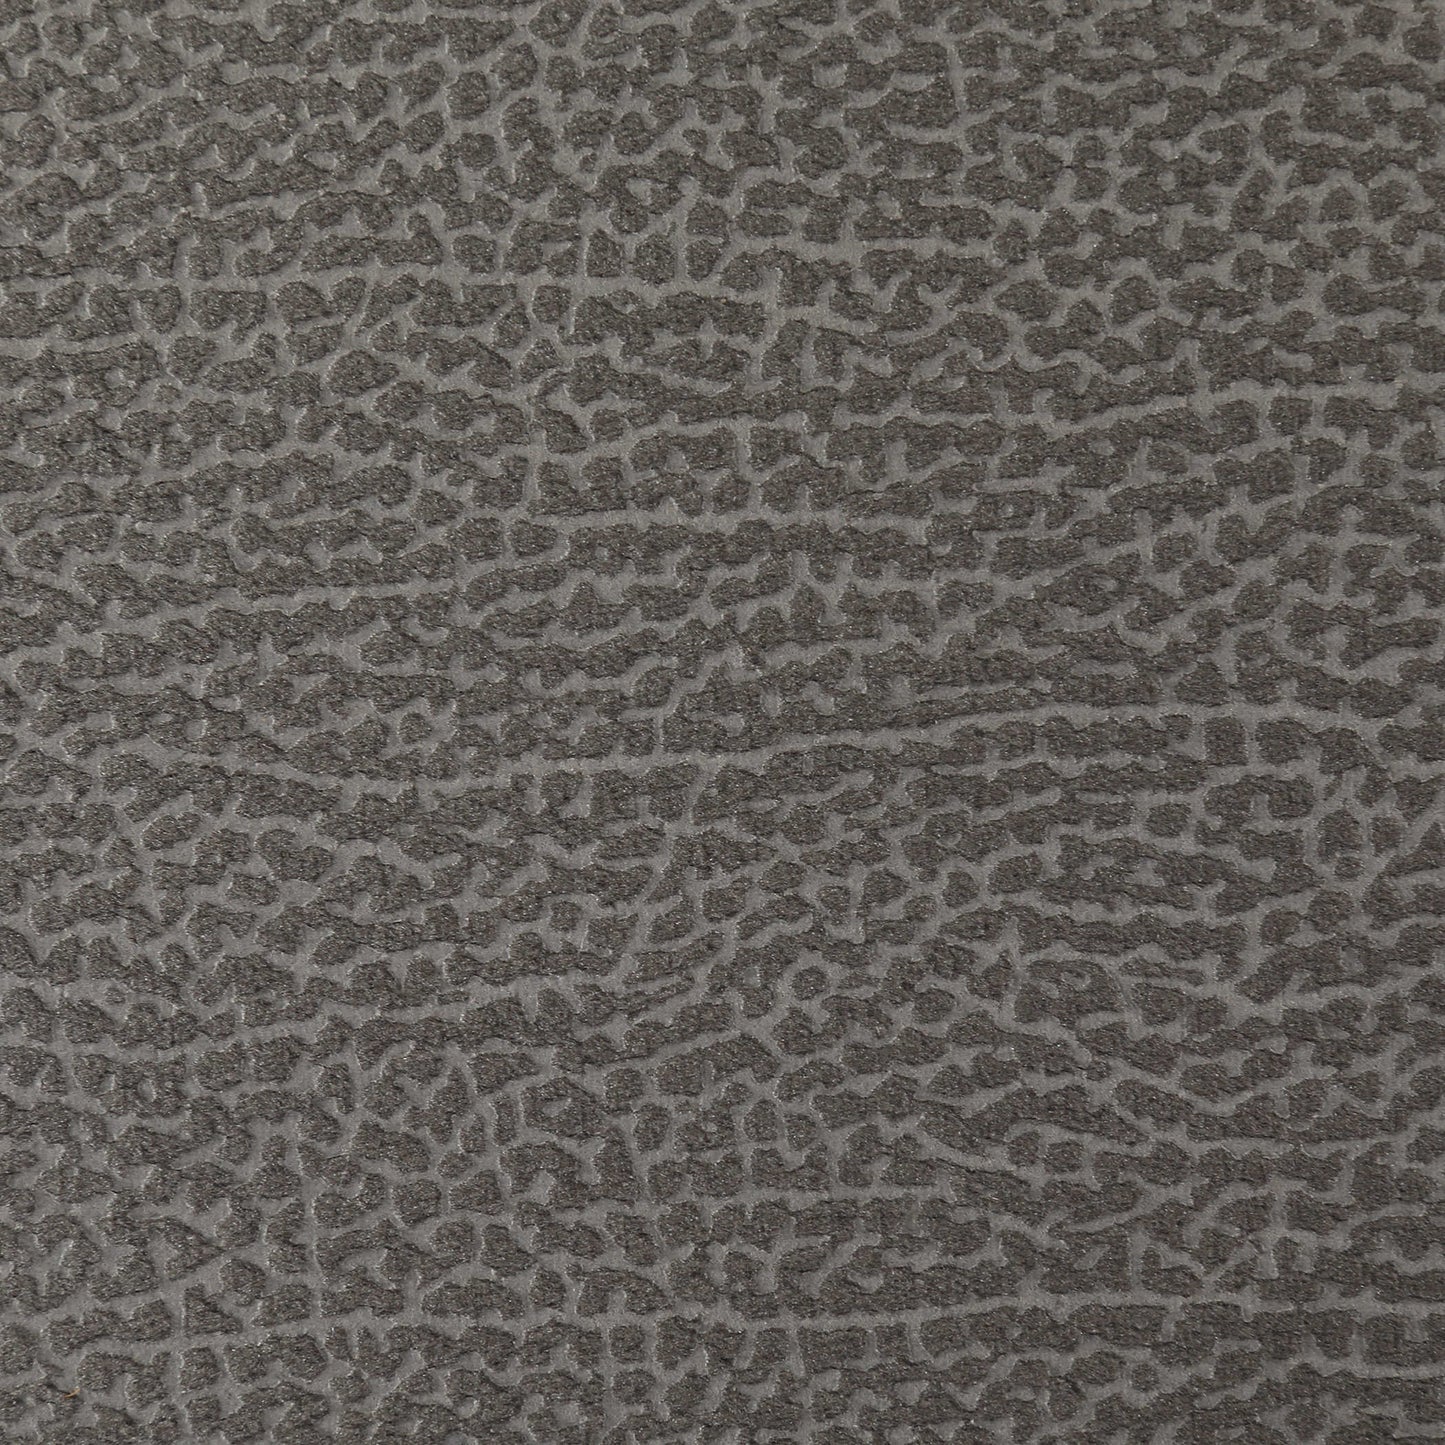 Macro shot of gray bench fabric